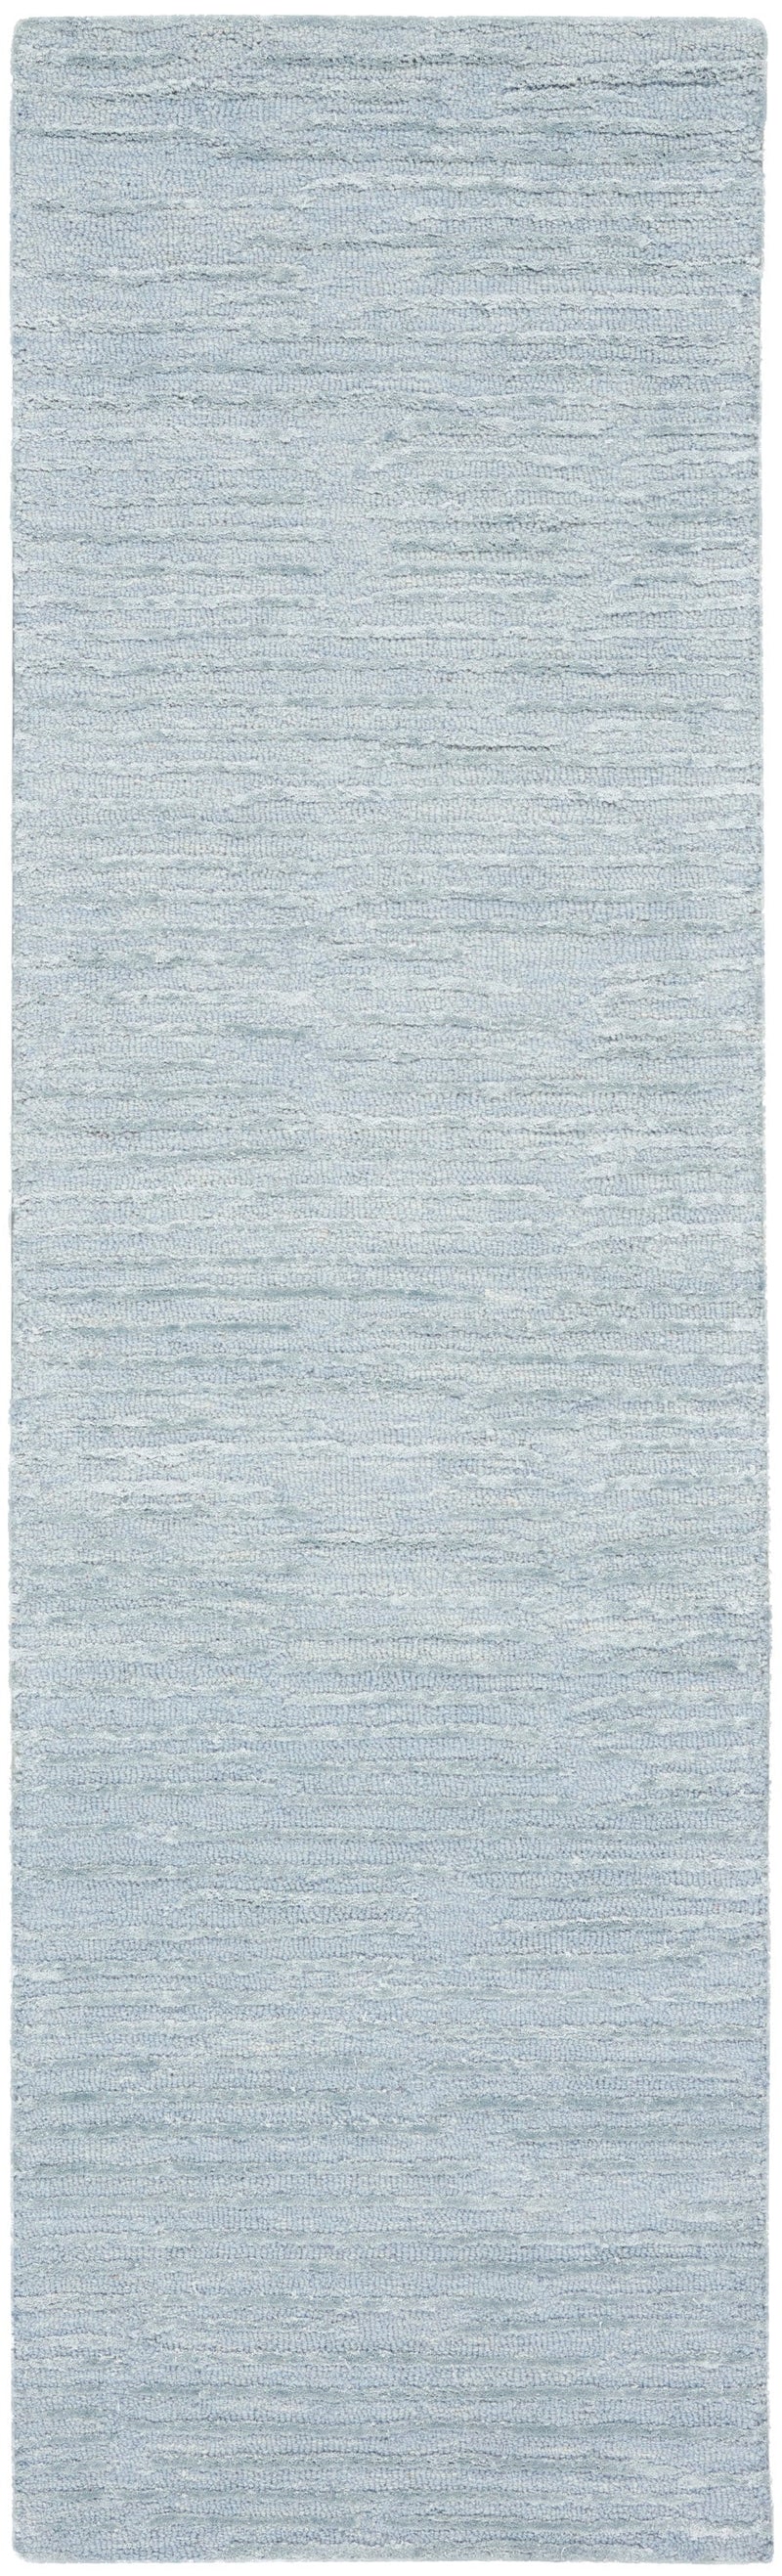 media image for ck010 linear handmade light blue rug by nourison 99446879950 redo 2 274